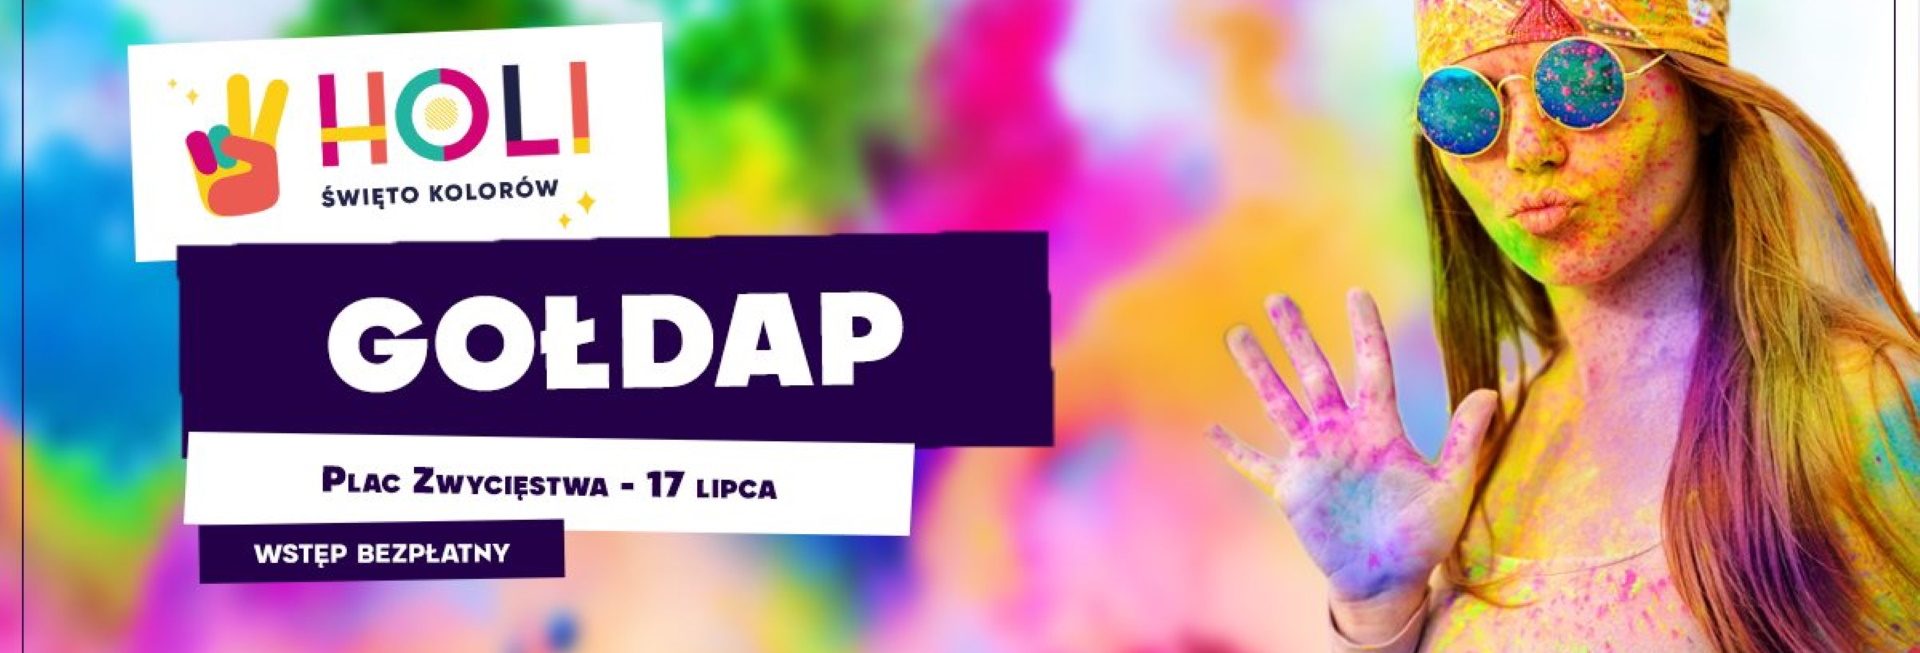 Plakat graficzny zapraszający do Gołdapi na imprezę Holi Święto Kolorów – Gołdap 2021. Na plakacie dziewczyna podczas imprezy pobrudzona różnymi kolorami.   